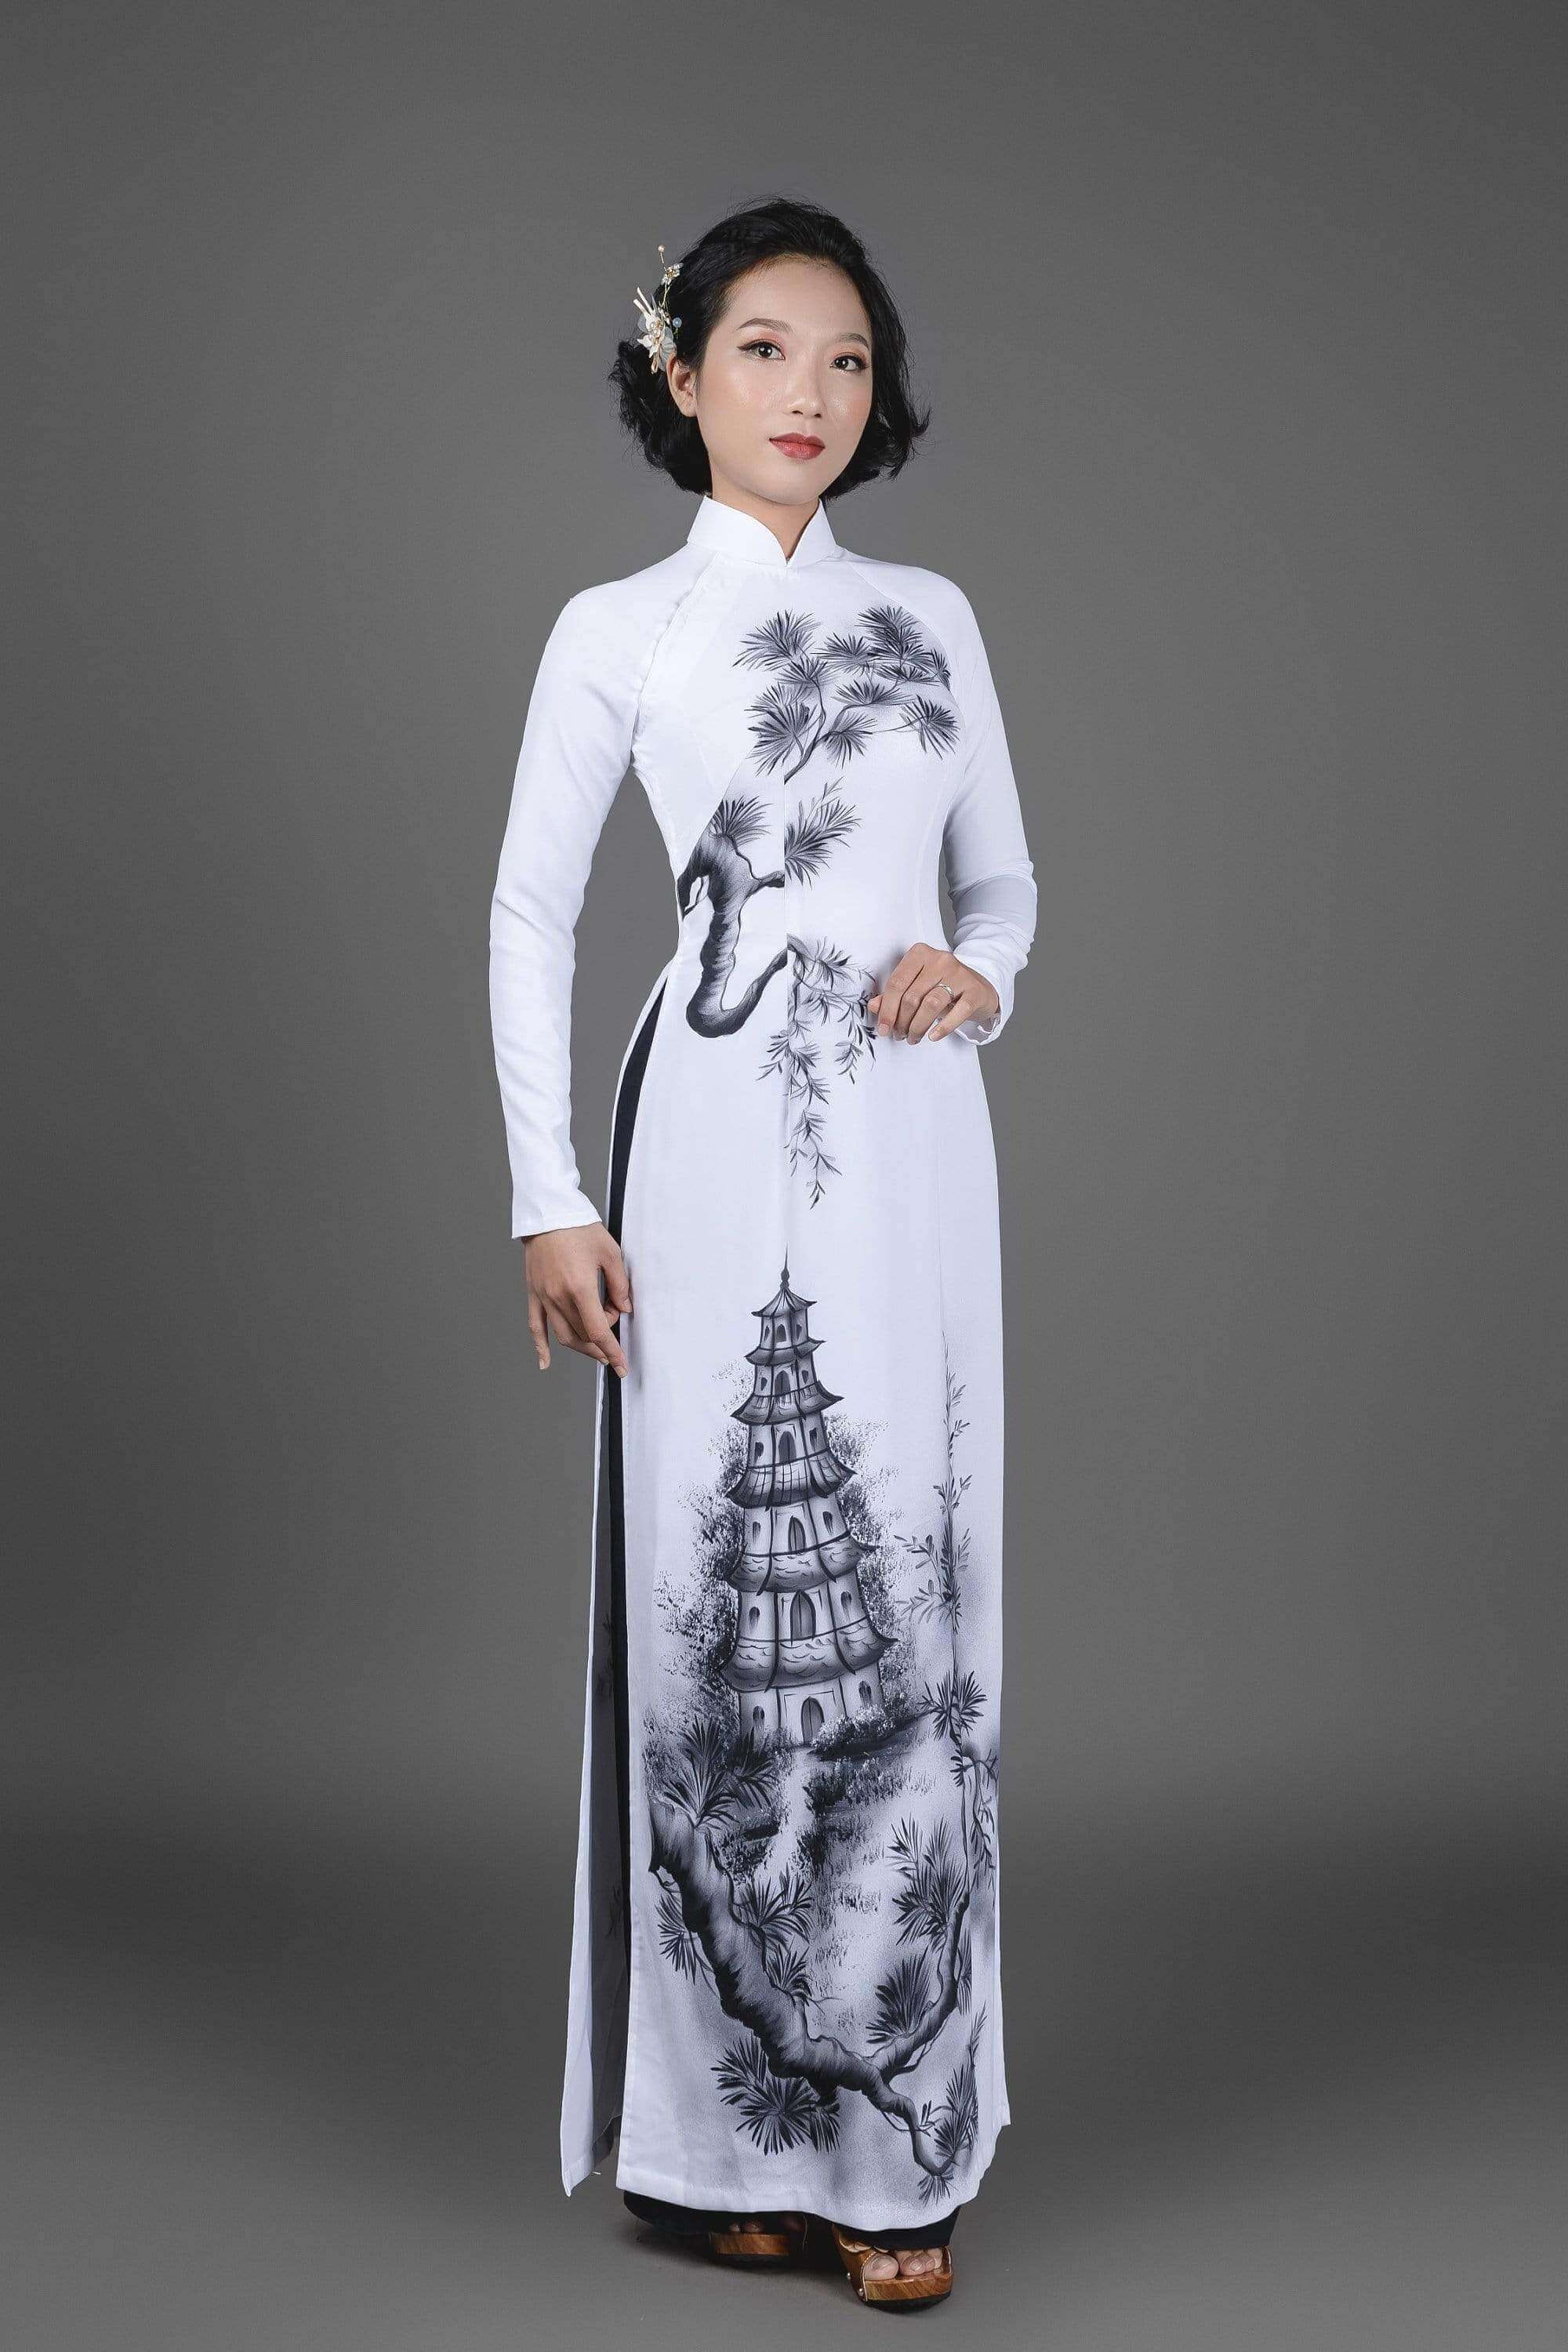 Vietnamese Ao Dai dress in white silk fabric. Hand-painted, pagoda